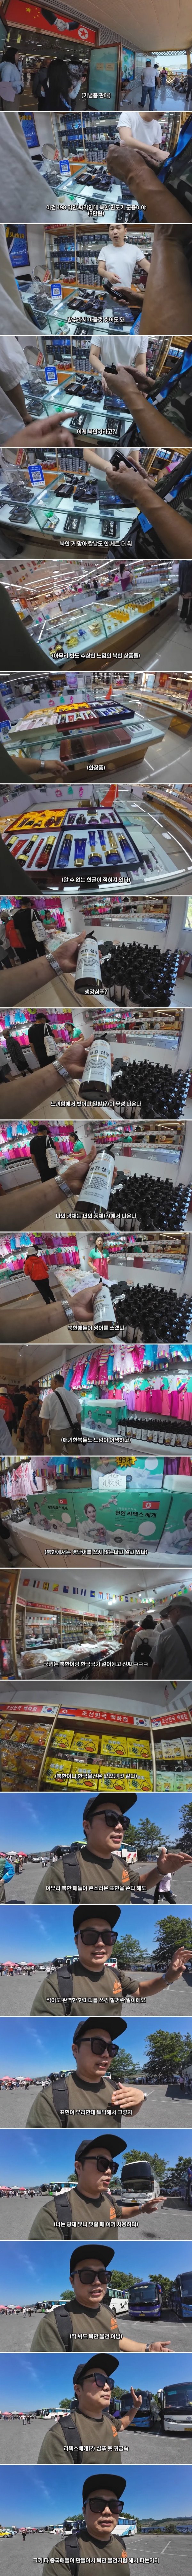 중국에서 판매 중인 수상한 북한 제품